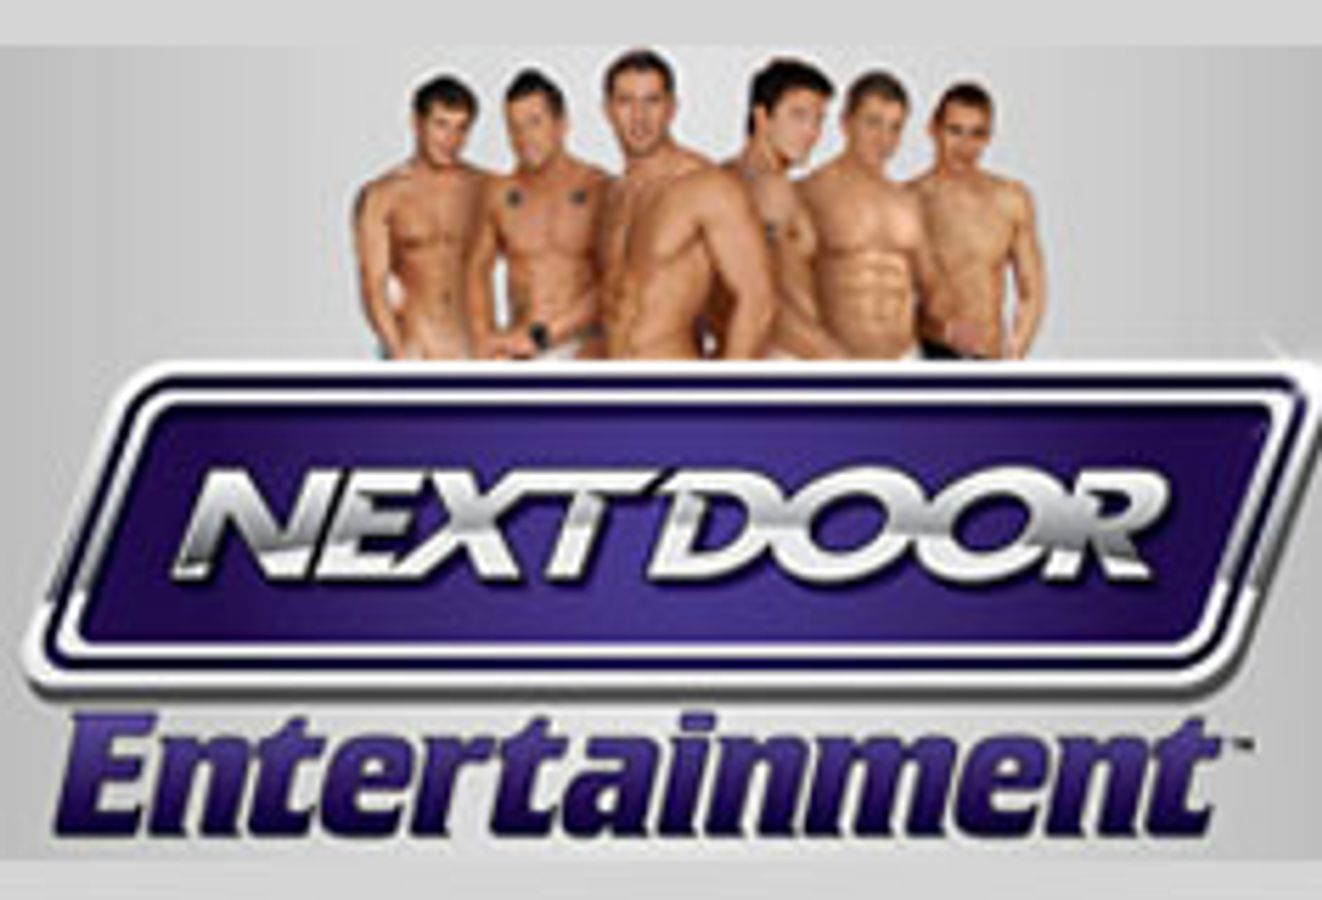 Next Door Entertainment